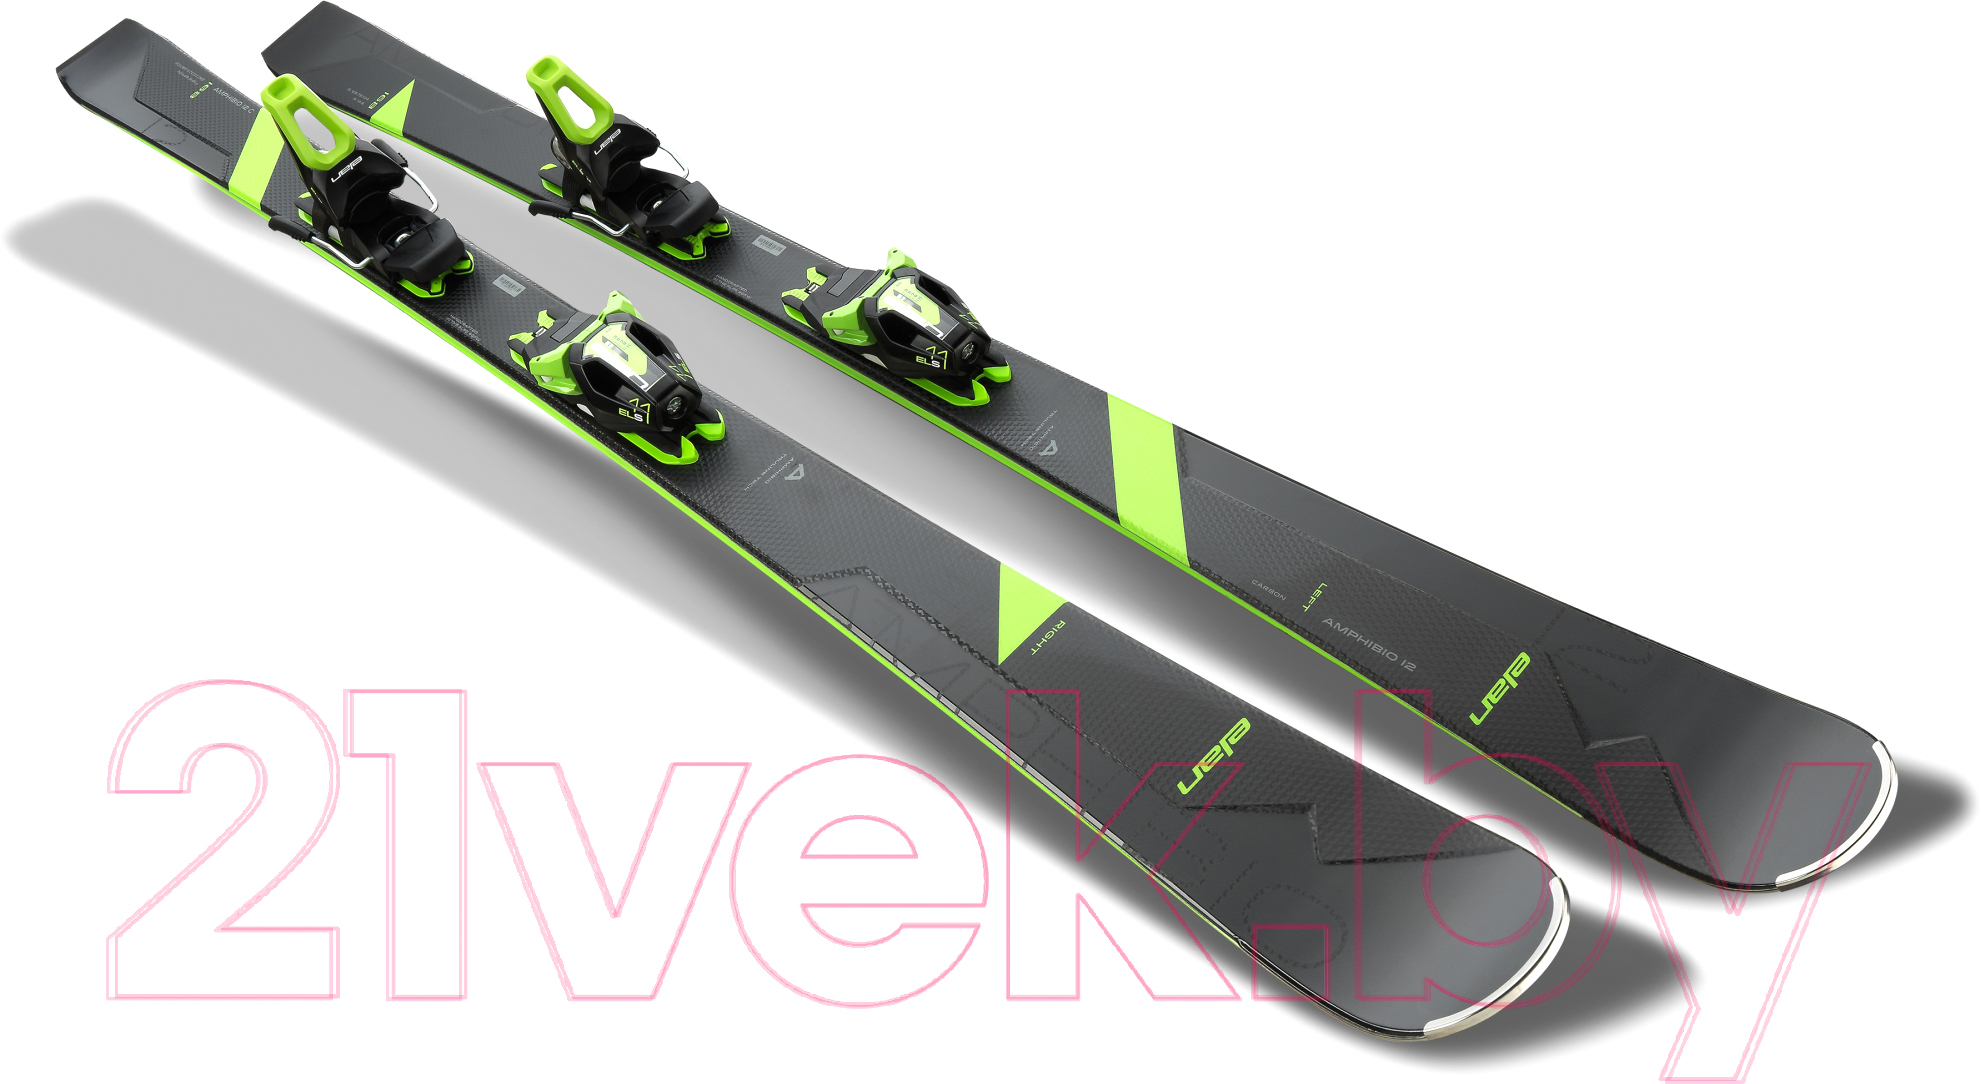 Горные лыжи с креплениями Elan Amphibio 12 C Power Shift & ELS 11.0 2021-22 / ABKGFW20